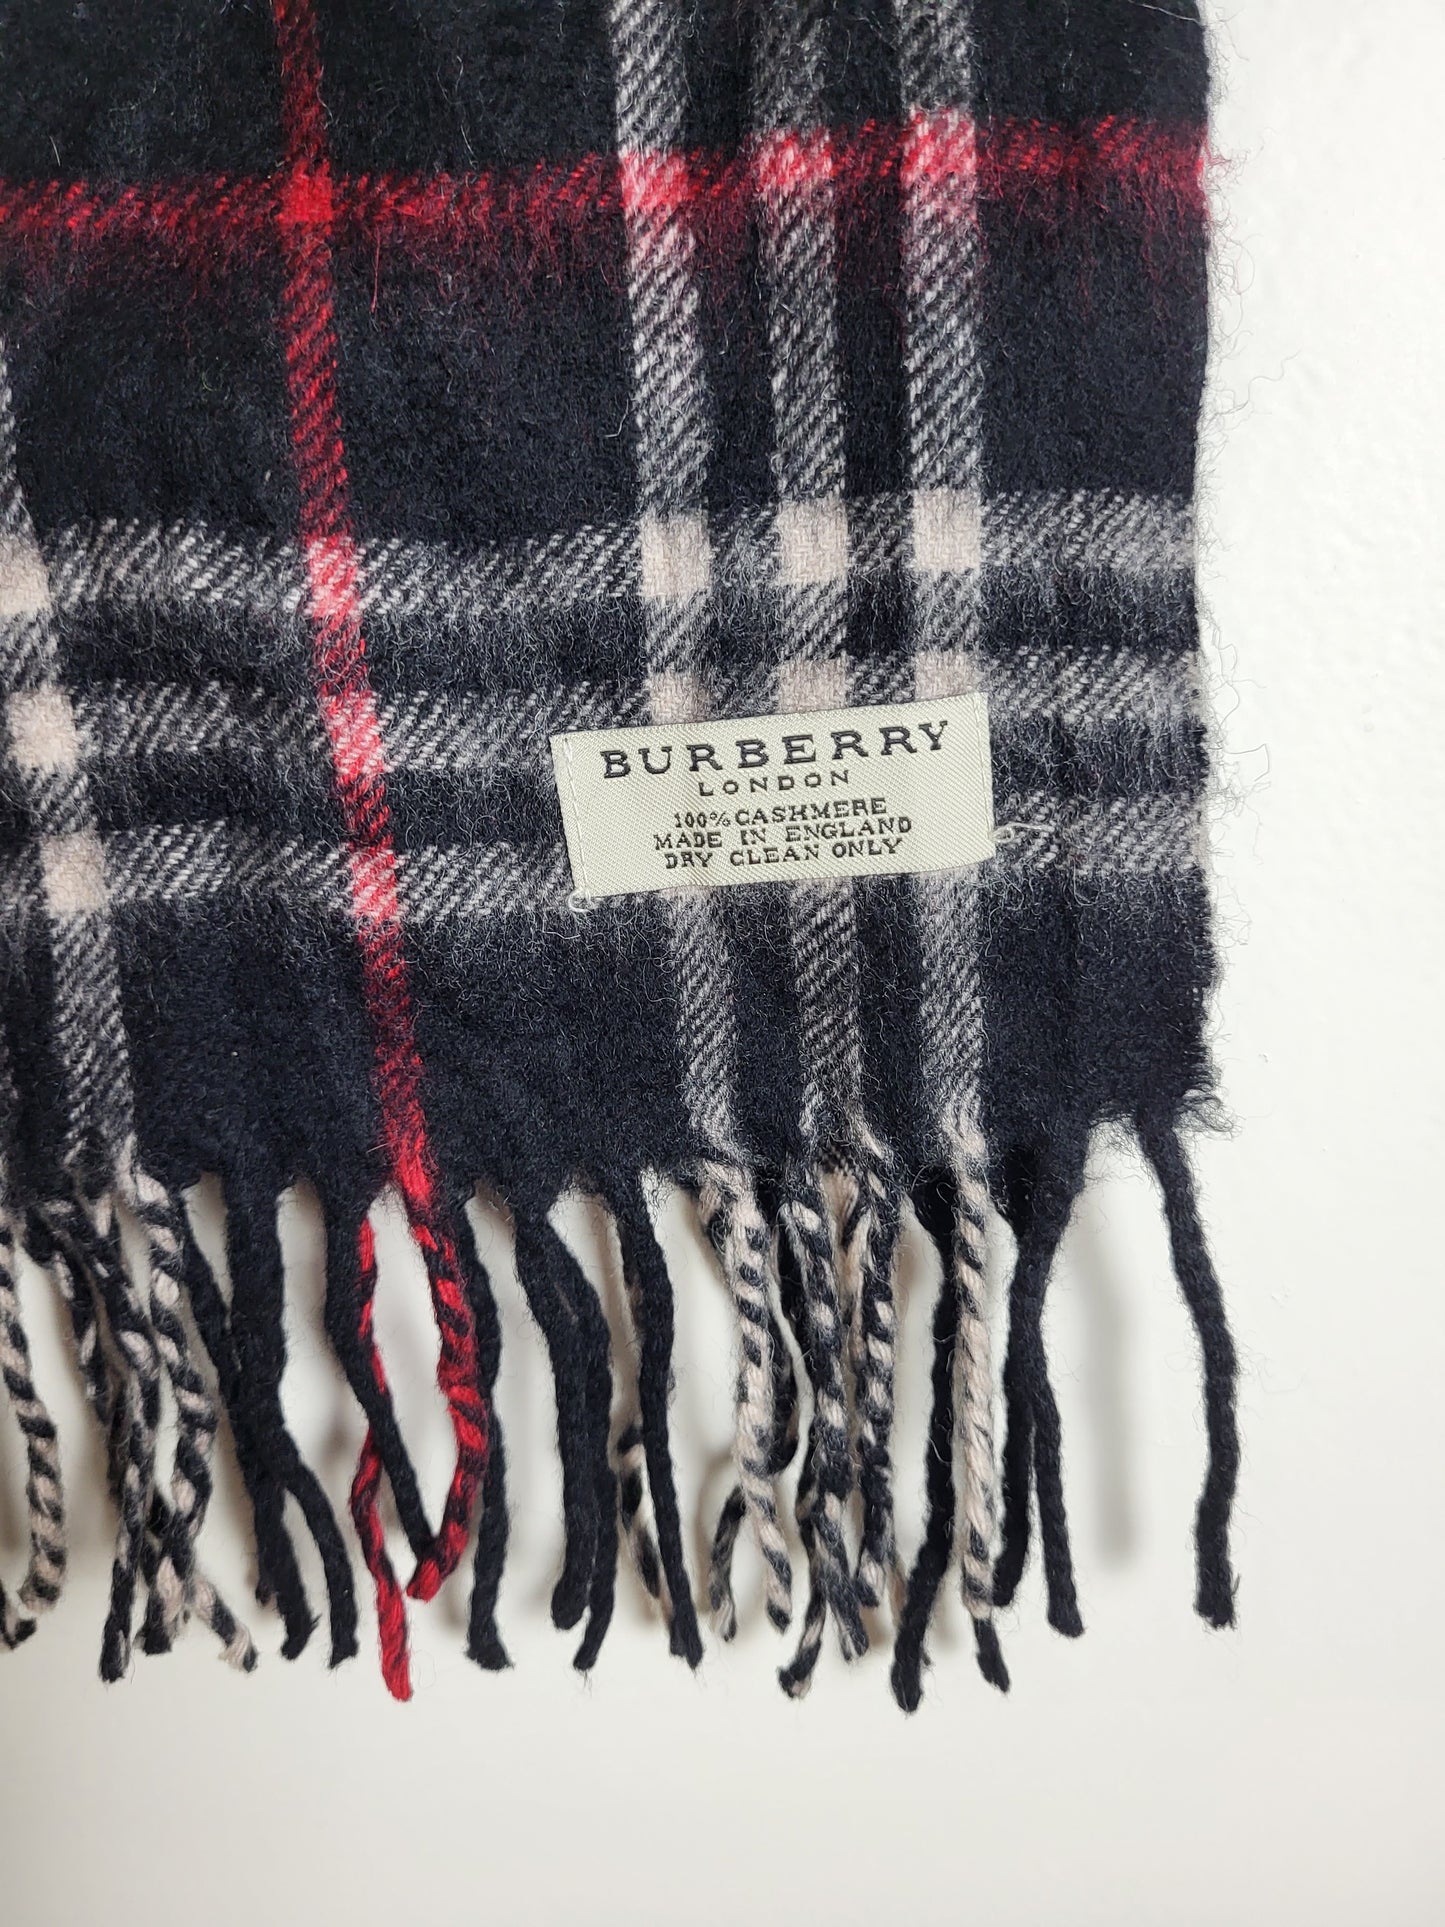 Burberry London - Vintage Schal - Schwarz / Rot Tartan - Kaschmir - 160 x 30